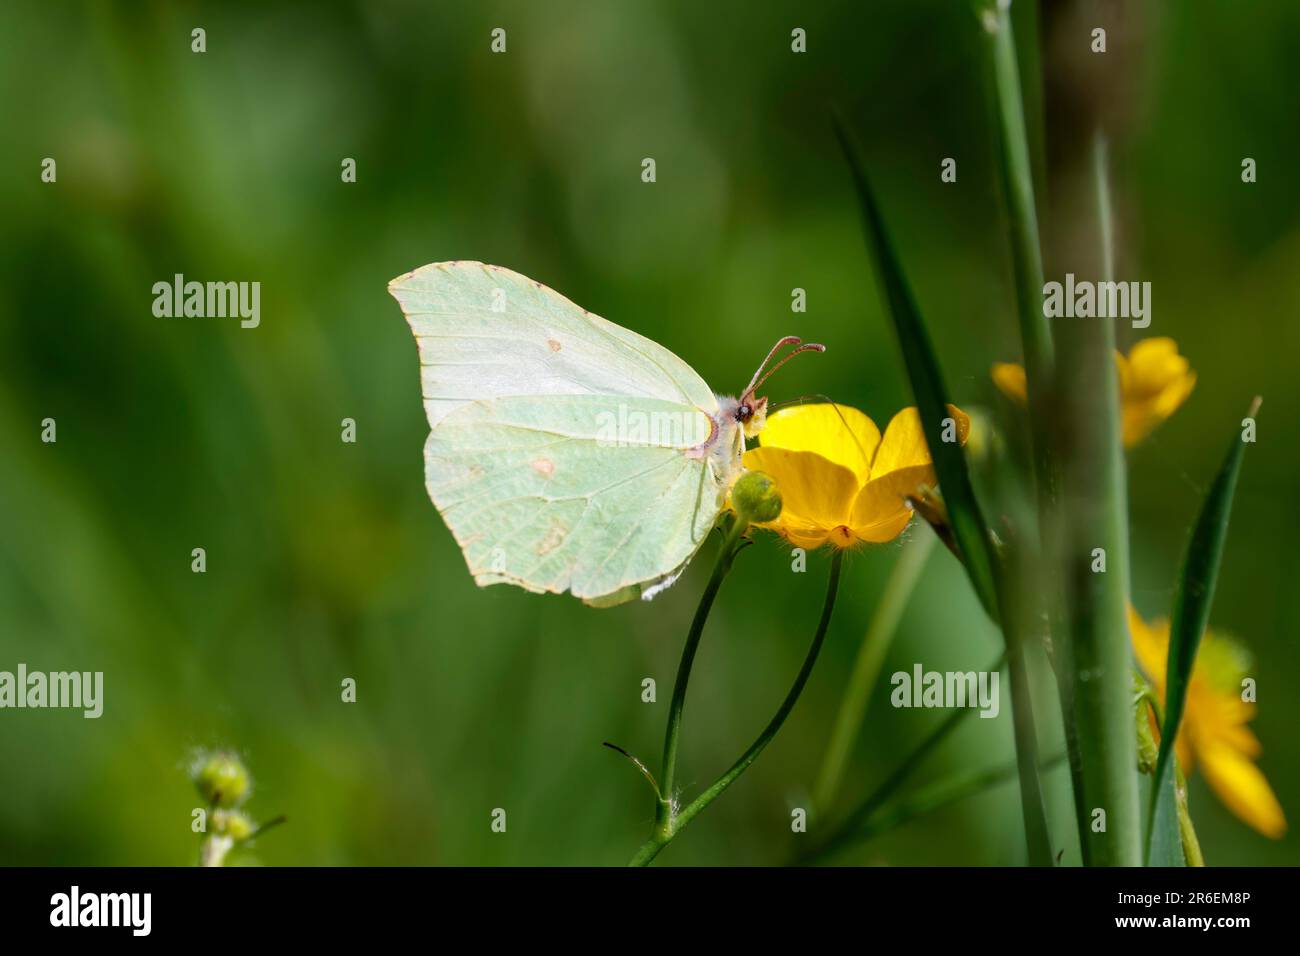 Farfalla di Brimstone Gonepteryx rhamni, giallastro sottobosce con marcature marroni e ovvie ovvie ali uniche di forma superiore maschio più giallo Foto Stock